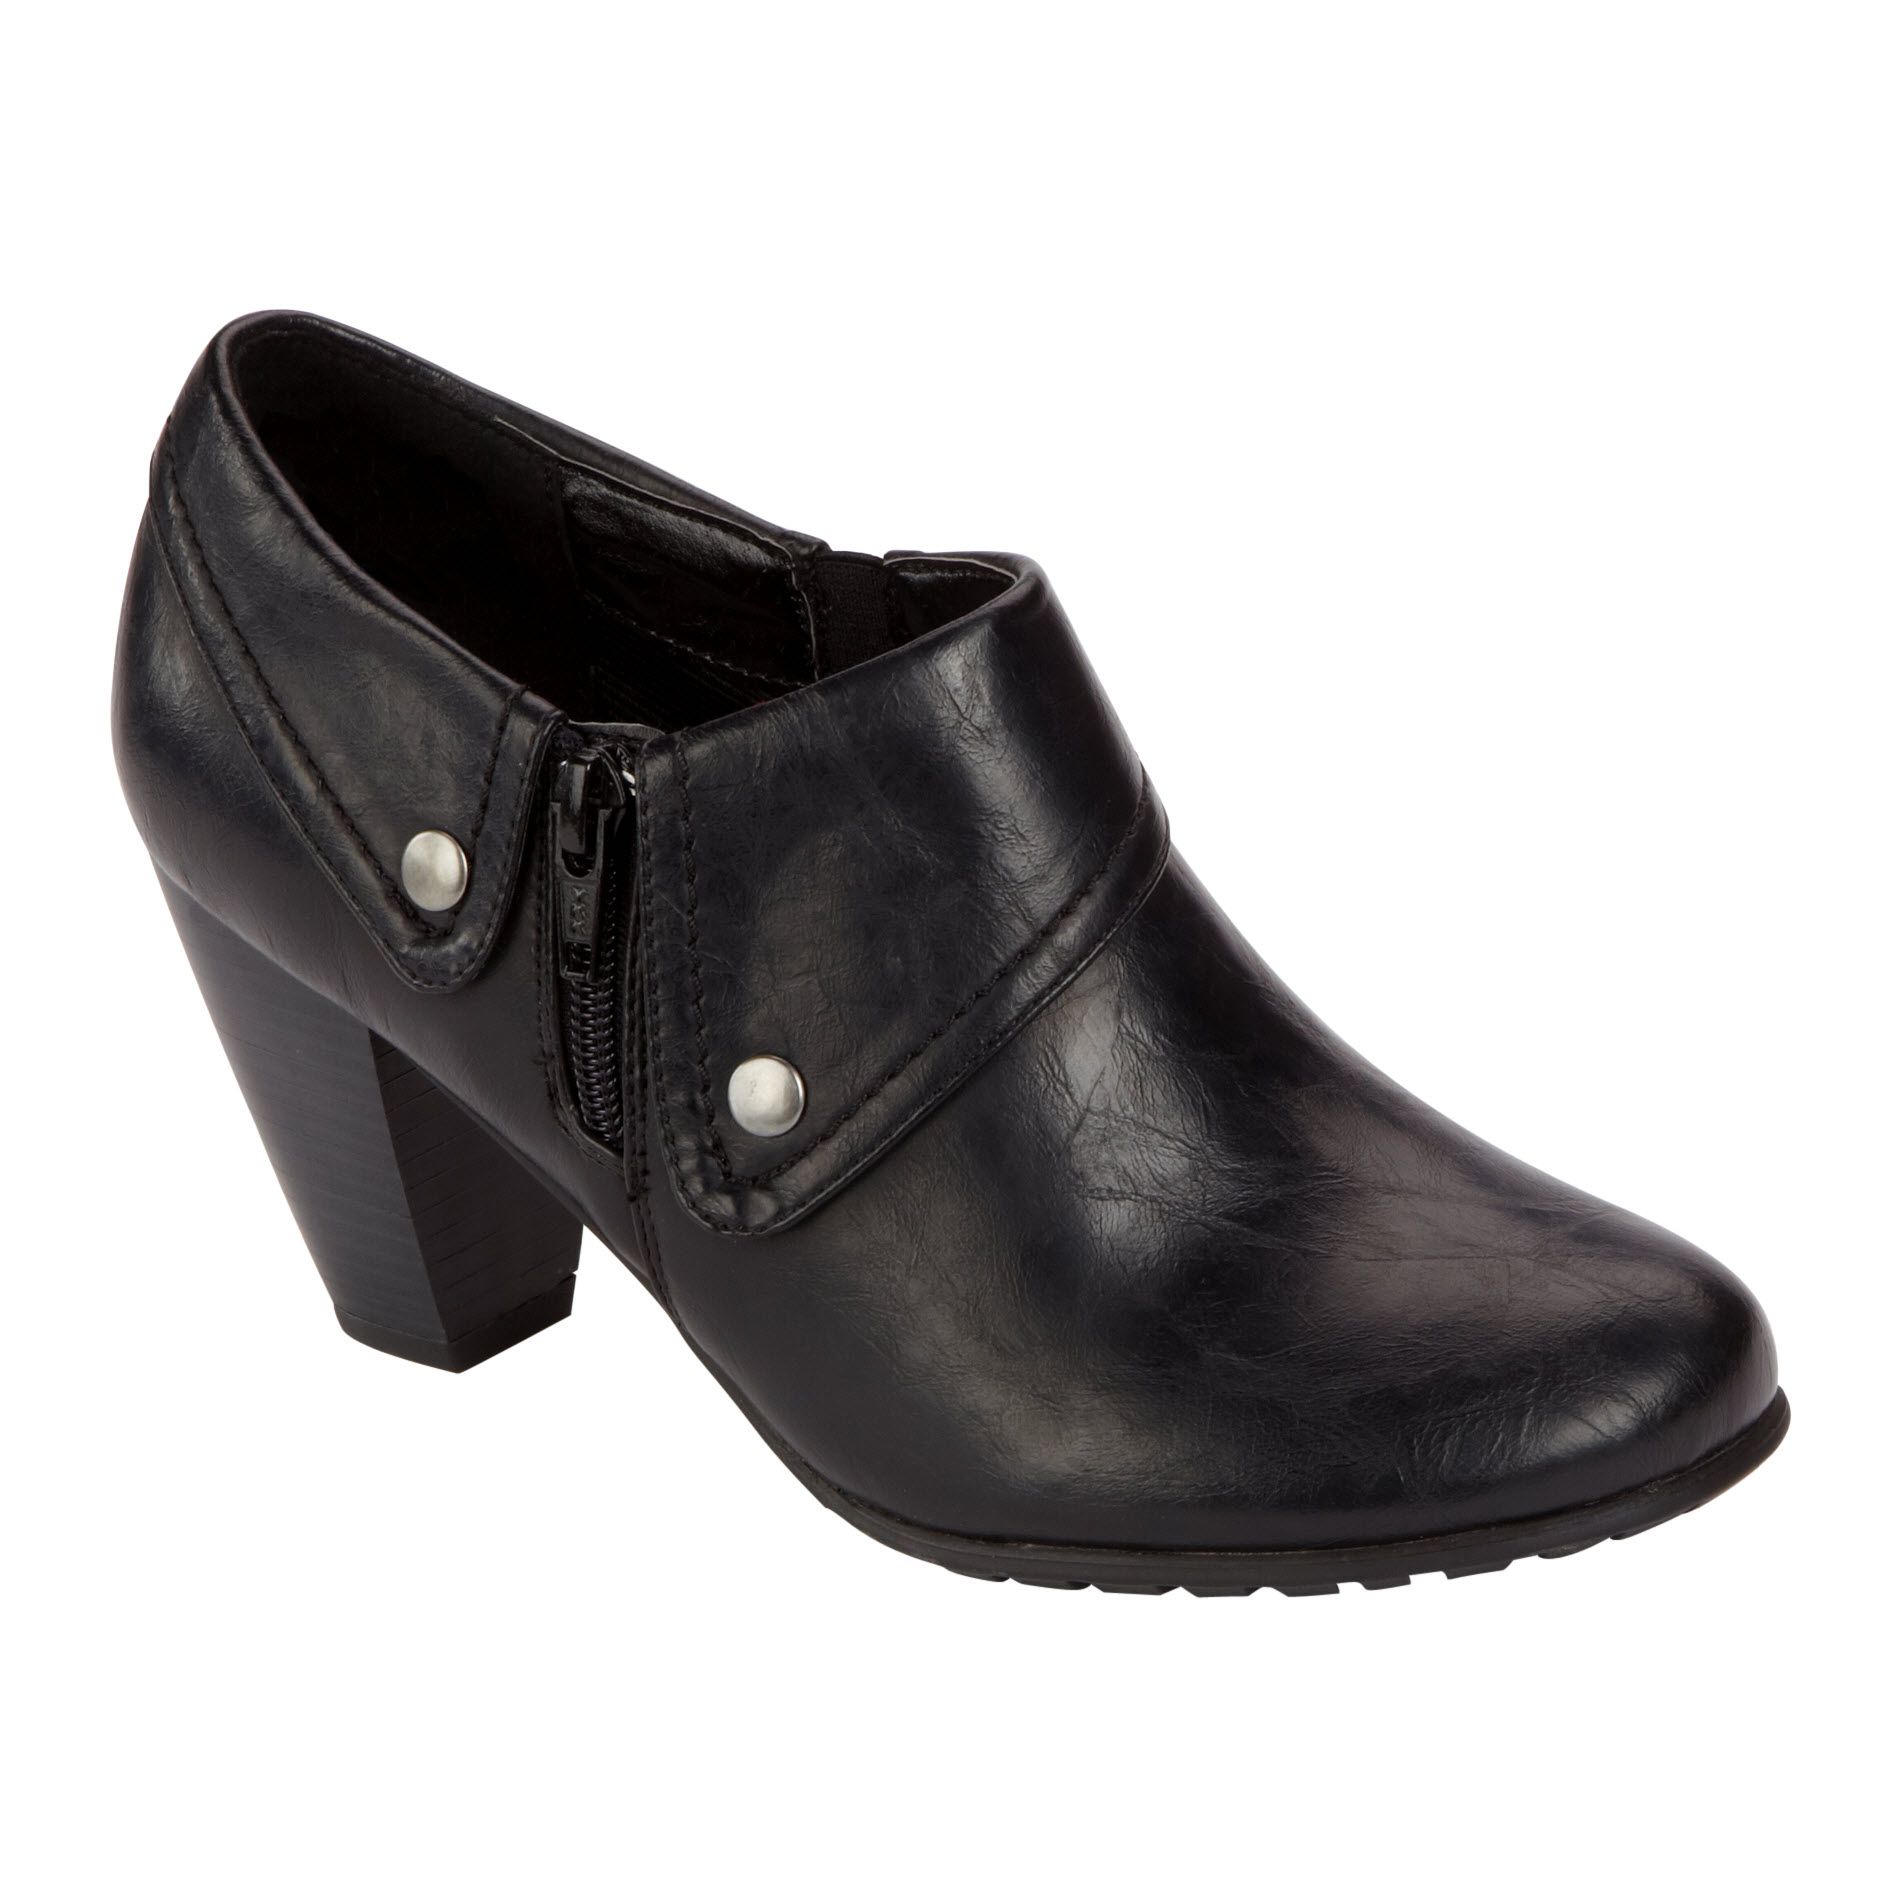 Covington Women's Casual Shoe Hunter - Black